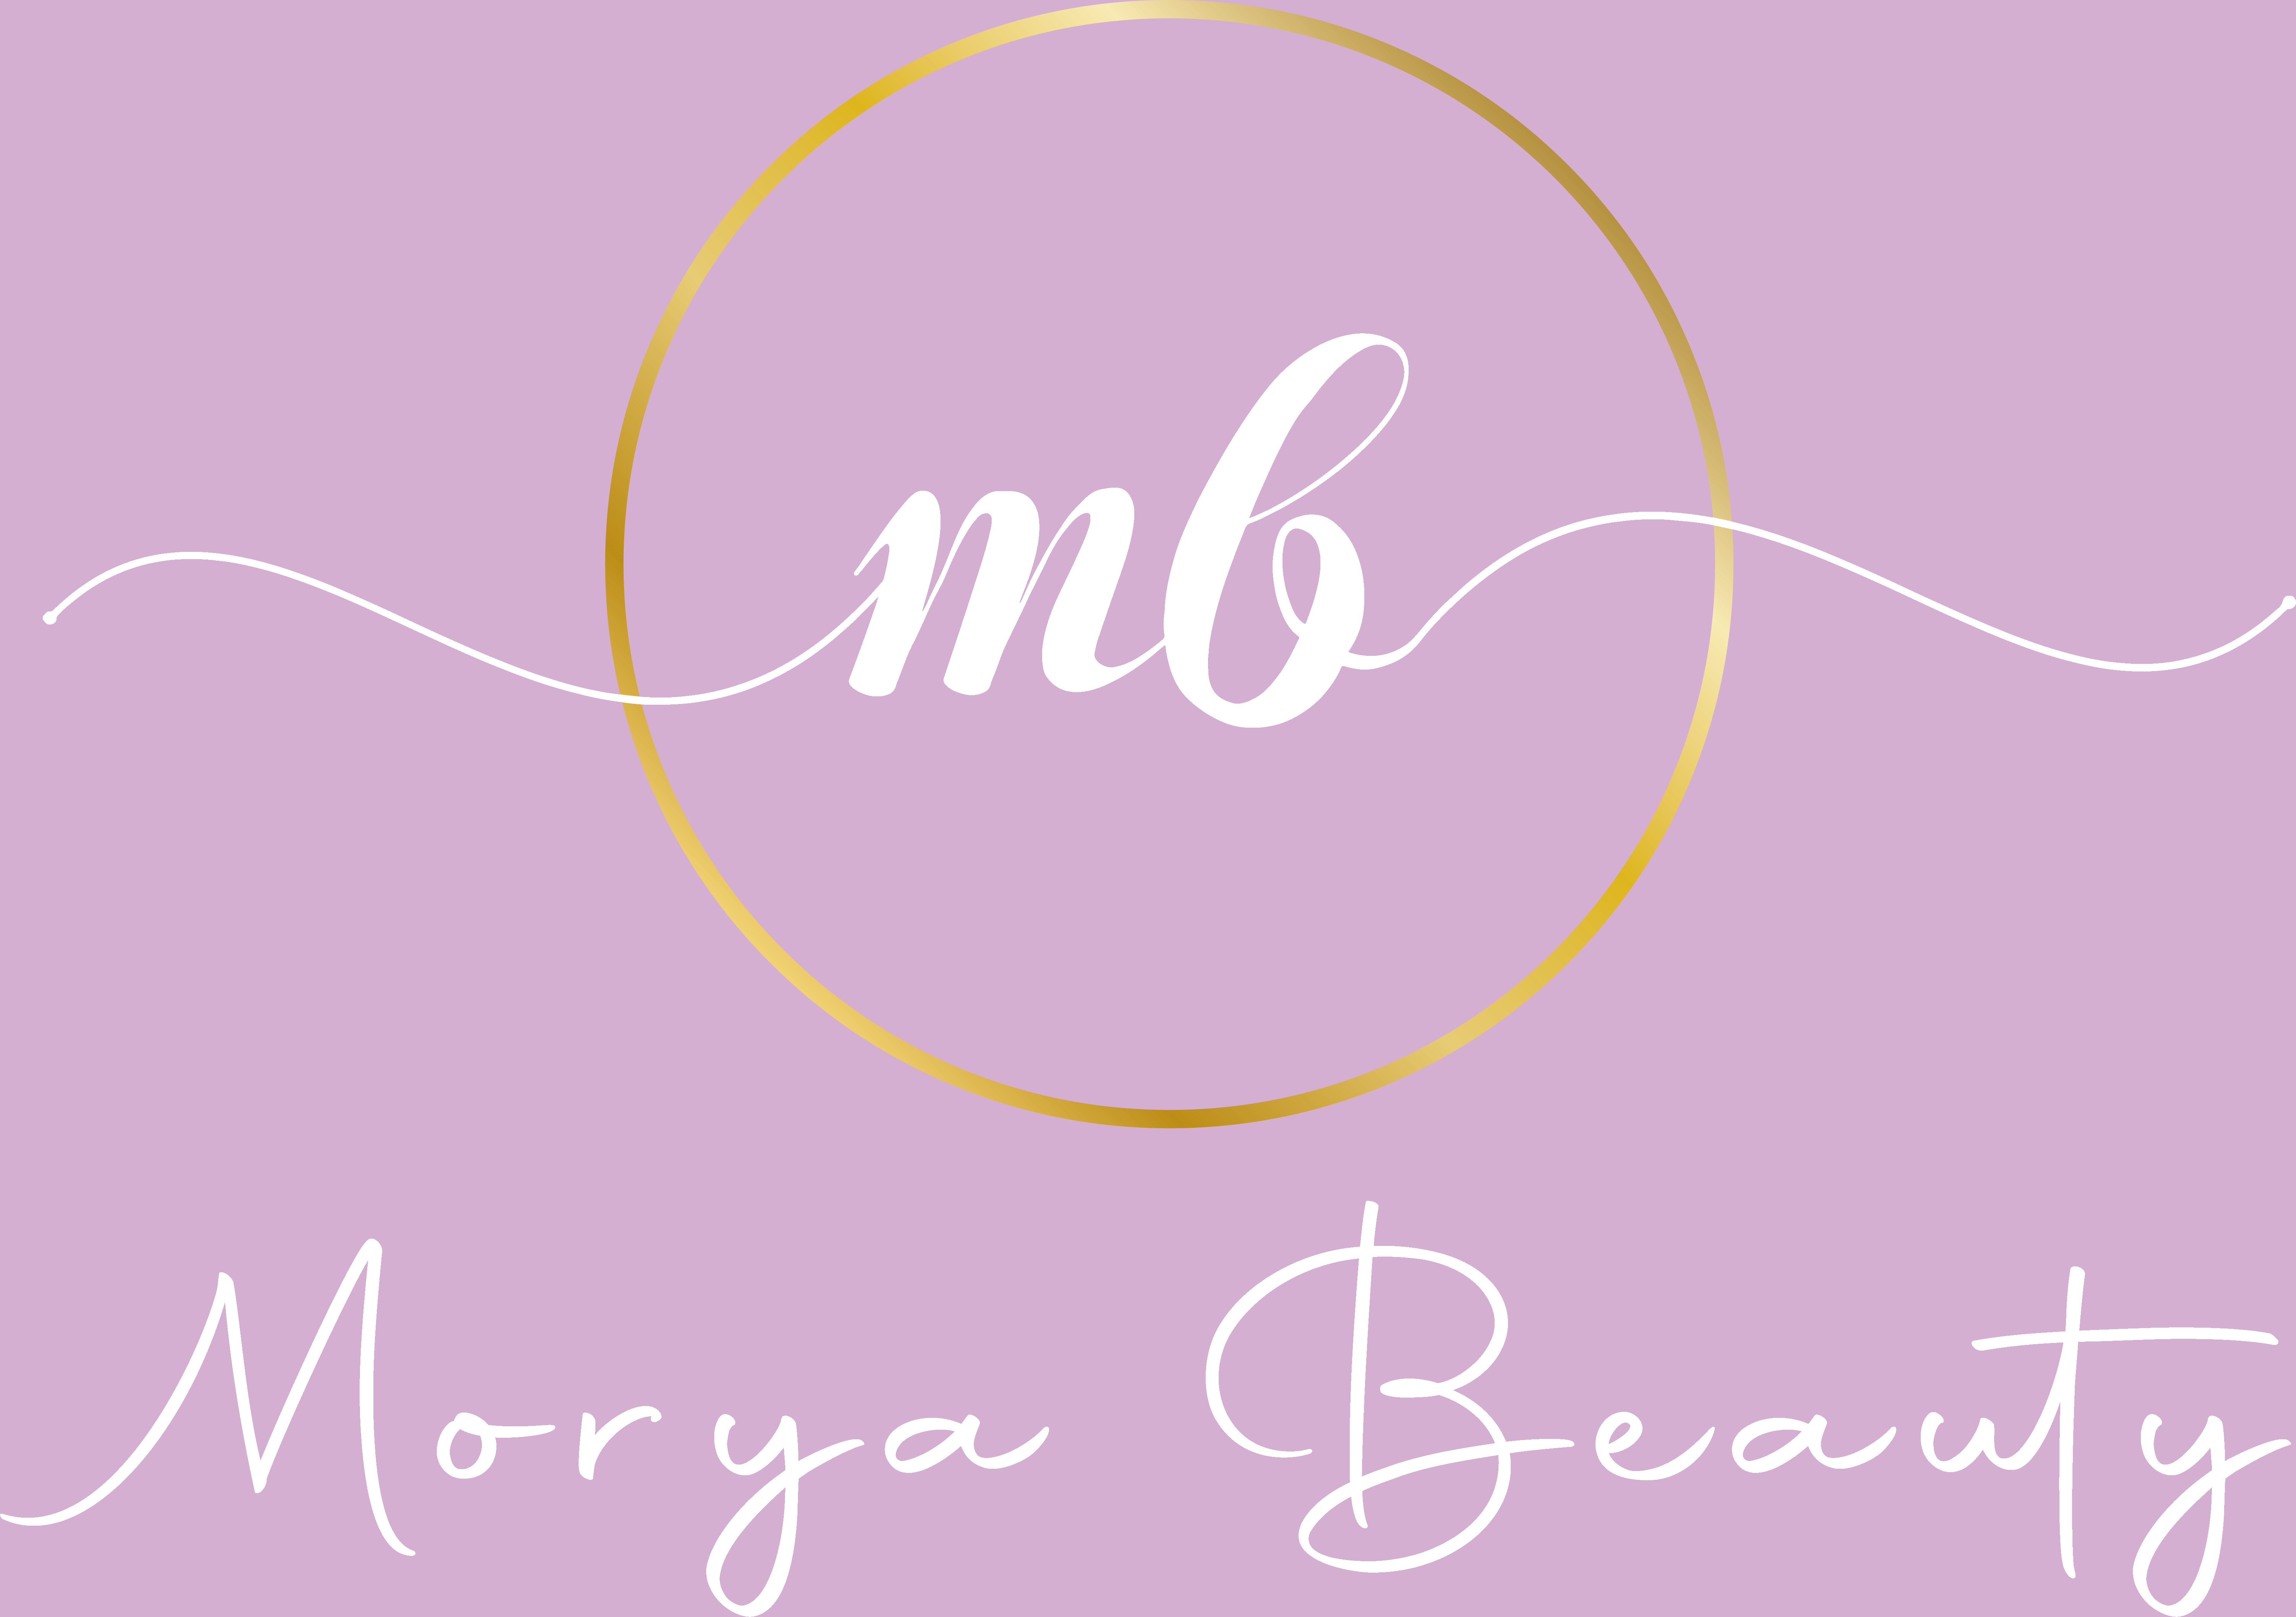 Morya Beauty - 